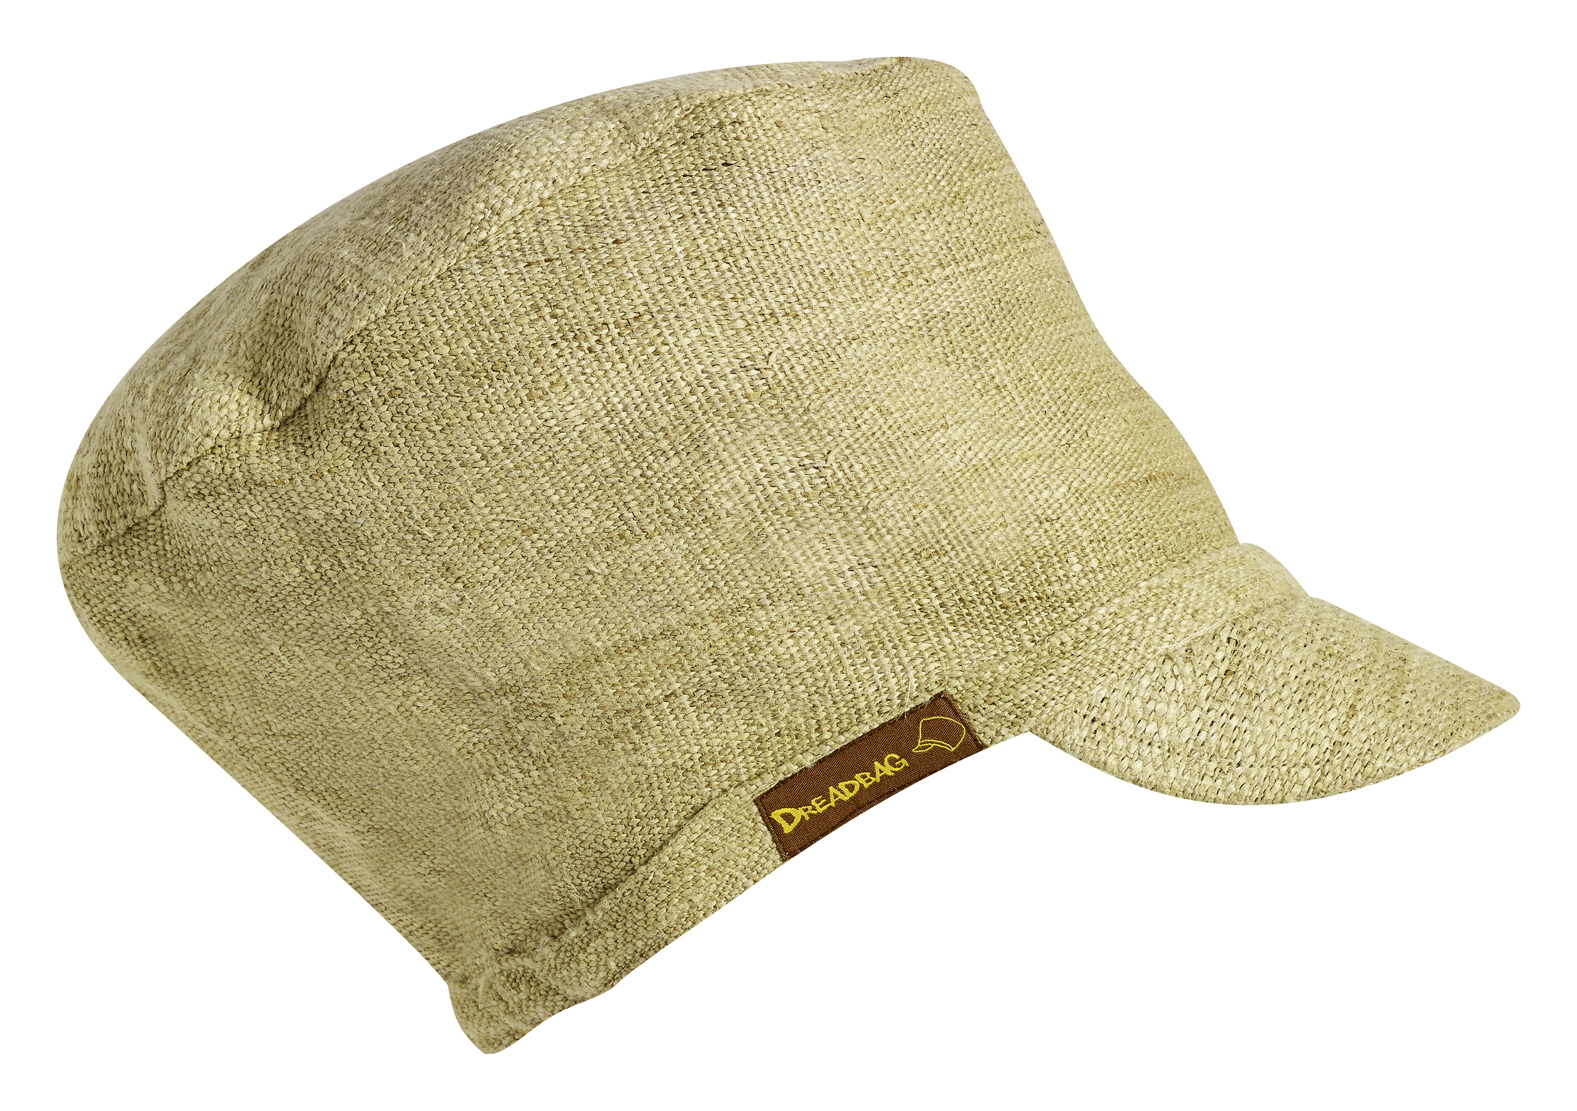 Dreadbag od konoplje - prirodni šešir od konoplje